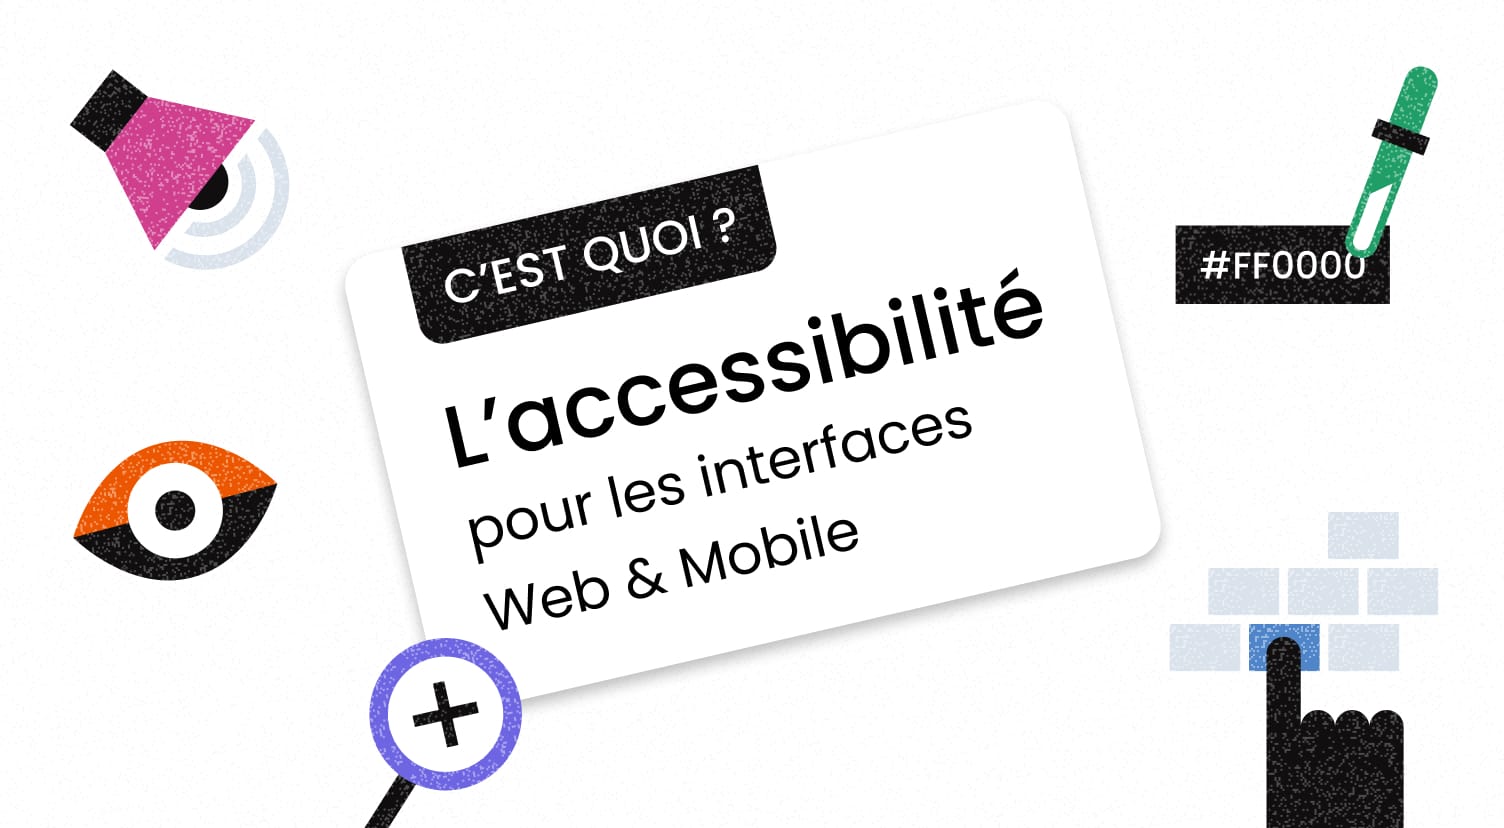 L’accessibilité pour les interfaces Web & Mobile